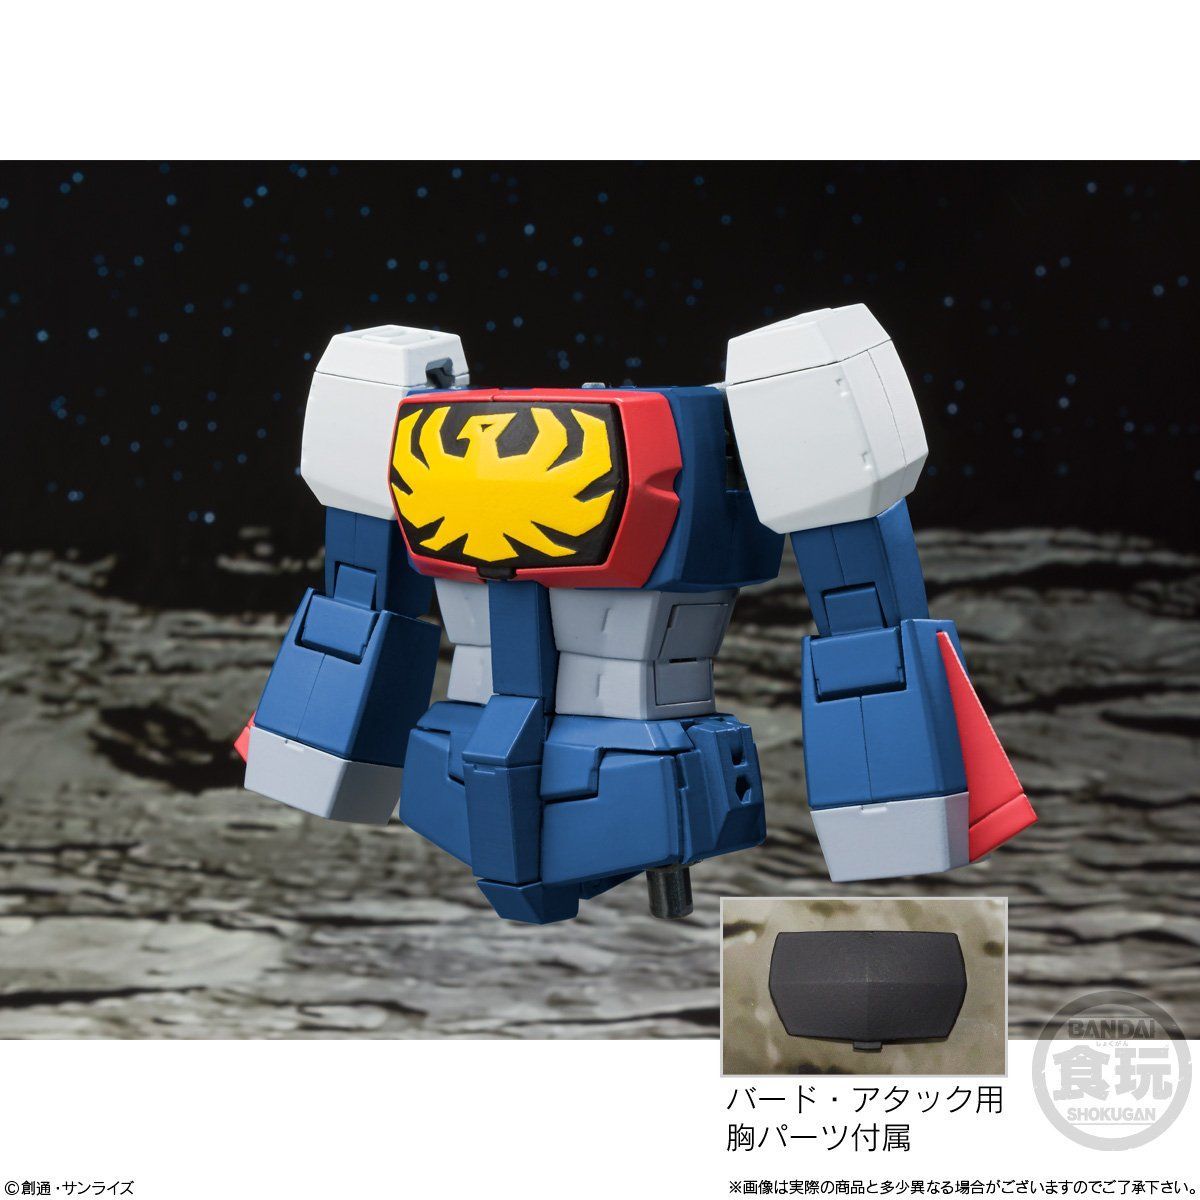 【食玩】スーパーミニプラ『無敵ロボ トライダーG7』3個入りBOX-009